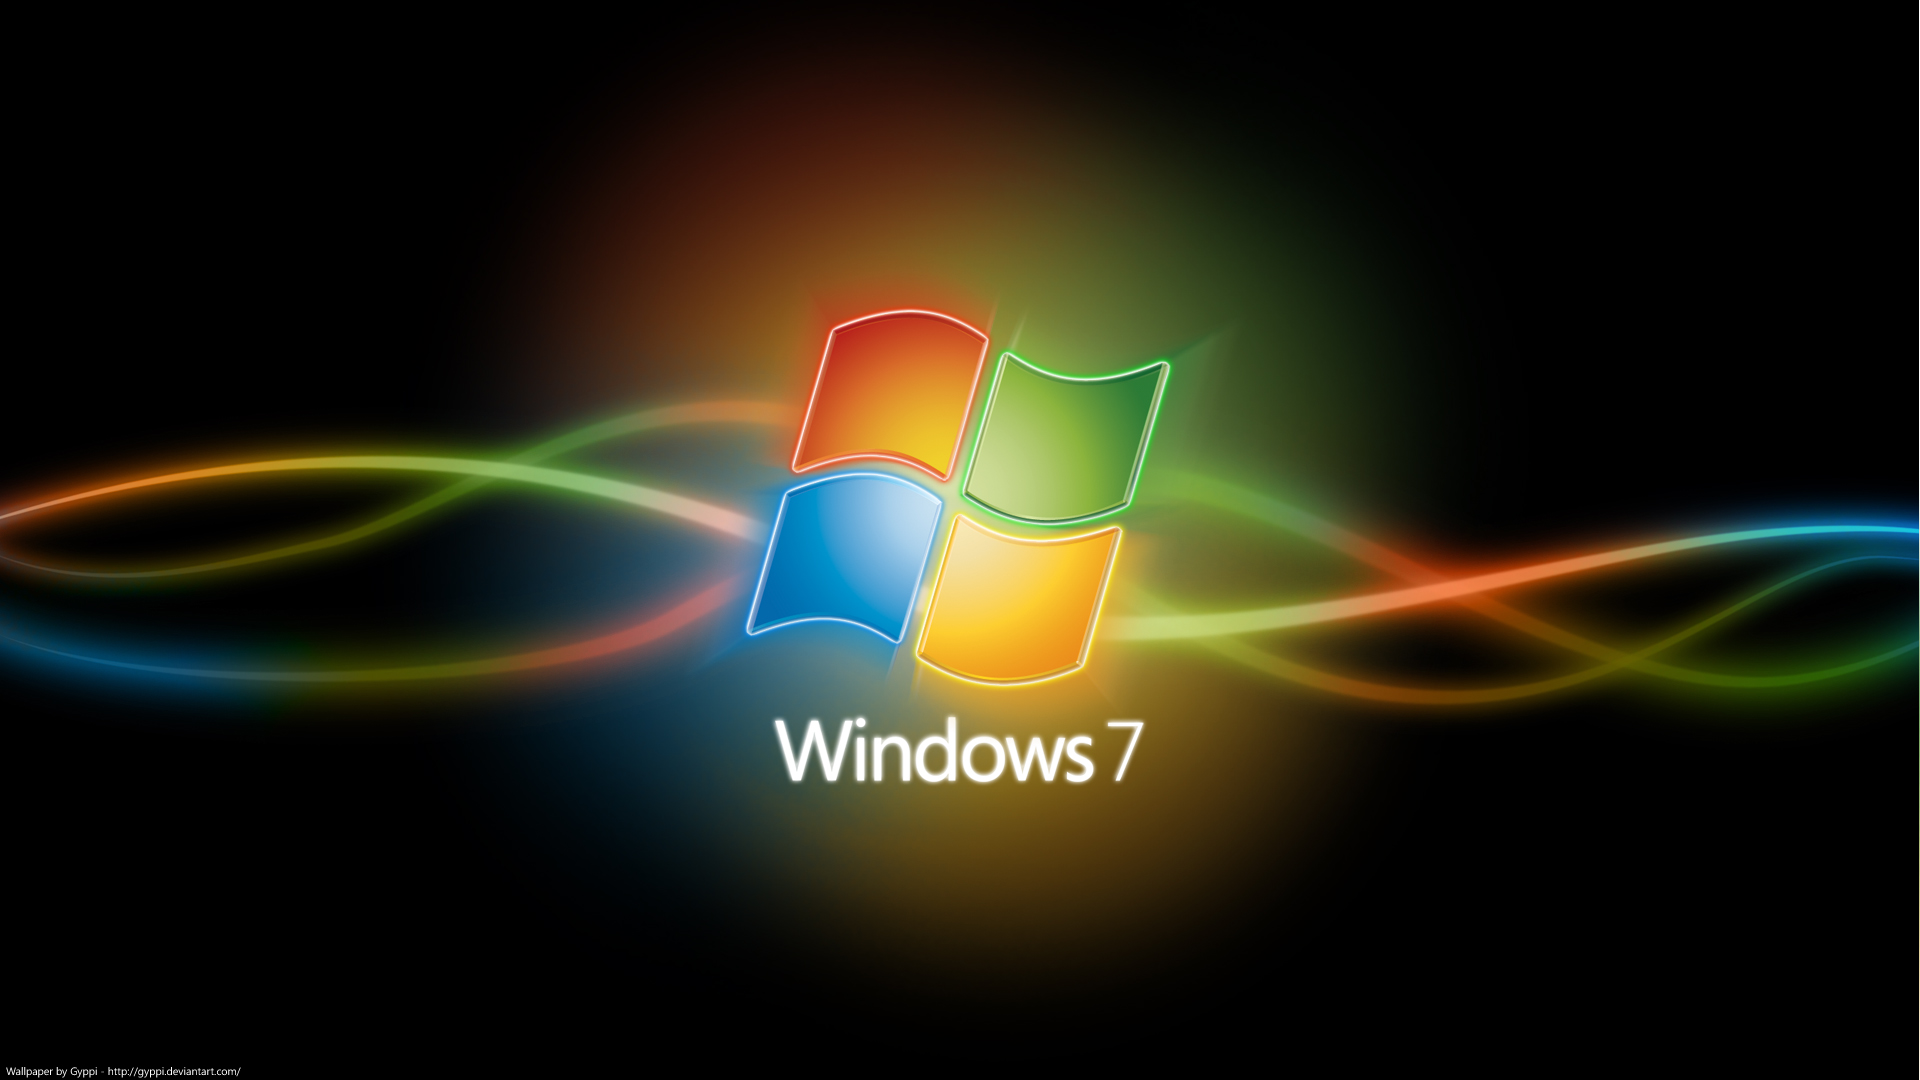 Windows Seven là hệ điều hành phổ biến trên thế giới với giao diện đơn giản và thân thiện với người dùng. Những hình ảnh liên quan đến Windows Seven sẽ sẵn sàng cung cấp cho bạn những gợi ý hữu ích cho thiết kế trang trí máy tính đẹp mắt và bắt mắt.